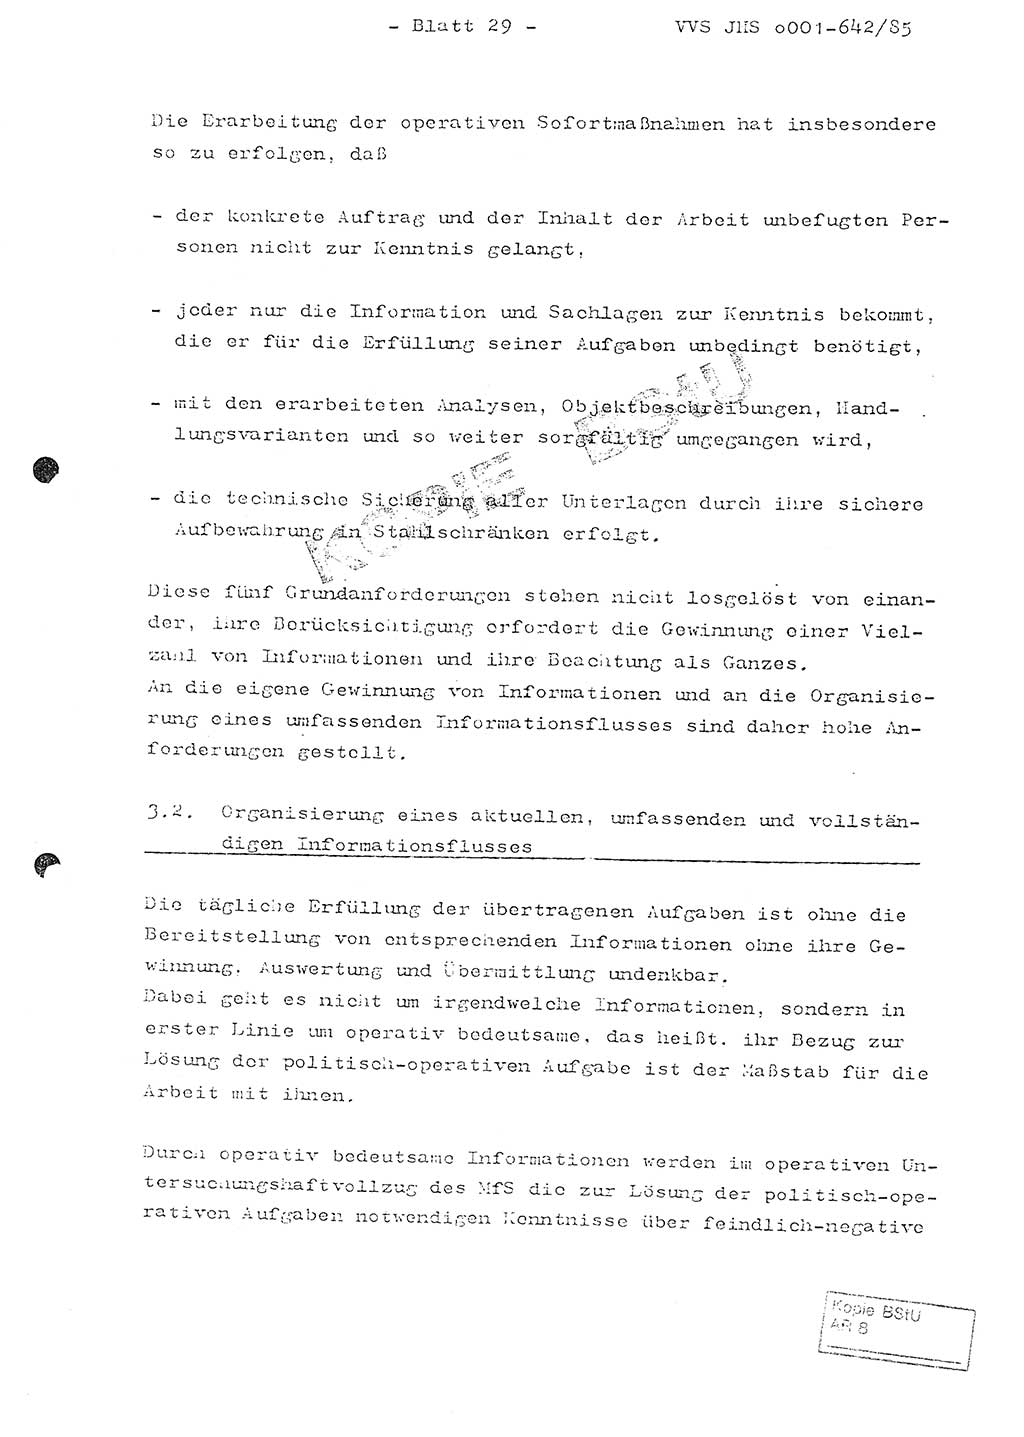 Fachschulabschlußarbeit Oberleutnant Lothar Fahland (Abt. ⅩⅣ), Ministerium für Staatssicherheit (MfS) [Deutsche Demokratische Republik (DDR)], Juristische Hochschule (JHS), Vertrauliche Verschlußsache (VVS) o001-642/85, Potsdam 1985, Blatt 29 (FS-Abschl.-Arb. MfS DDR JHS VVS o001-642/85 1985, Bl. 29)